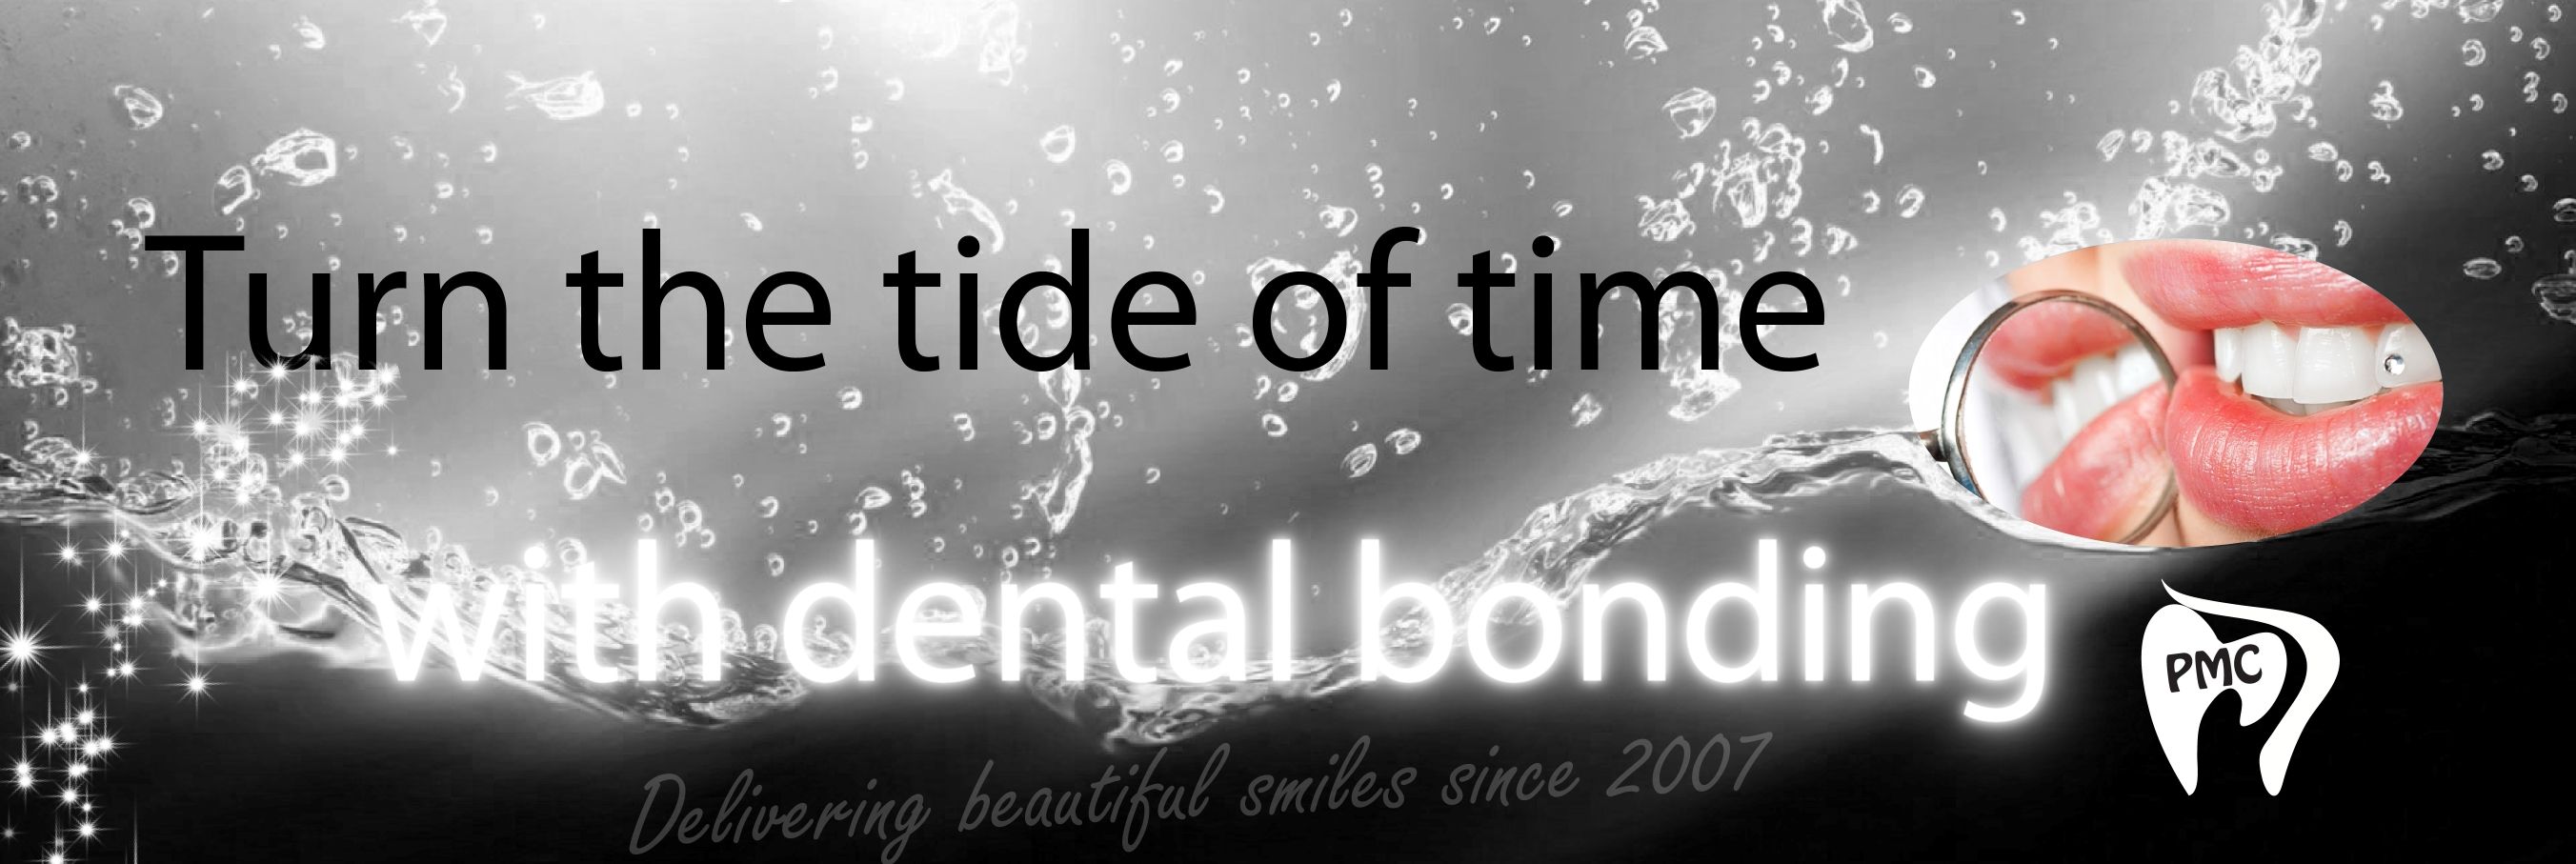 Dental bonding image